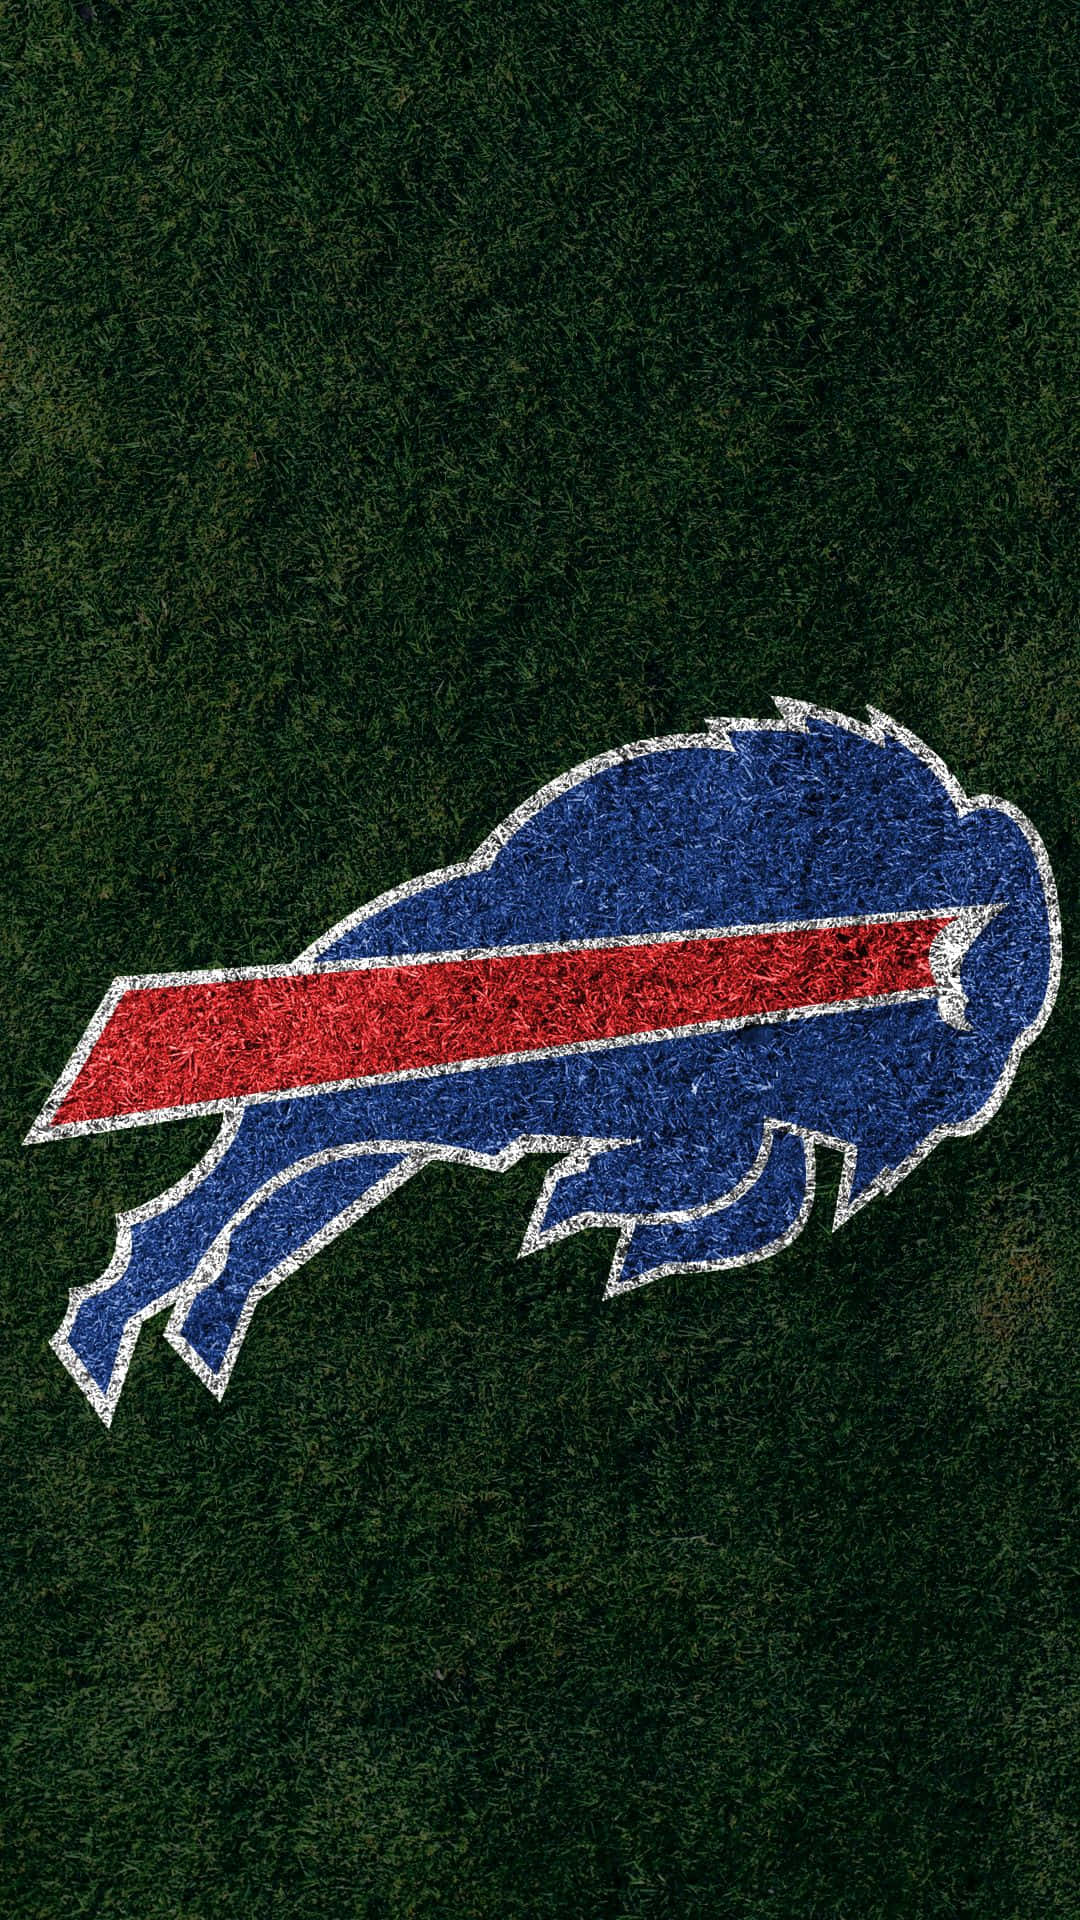 Buffalo Bills Logoon Grass Texture Wallpaper